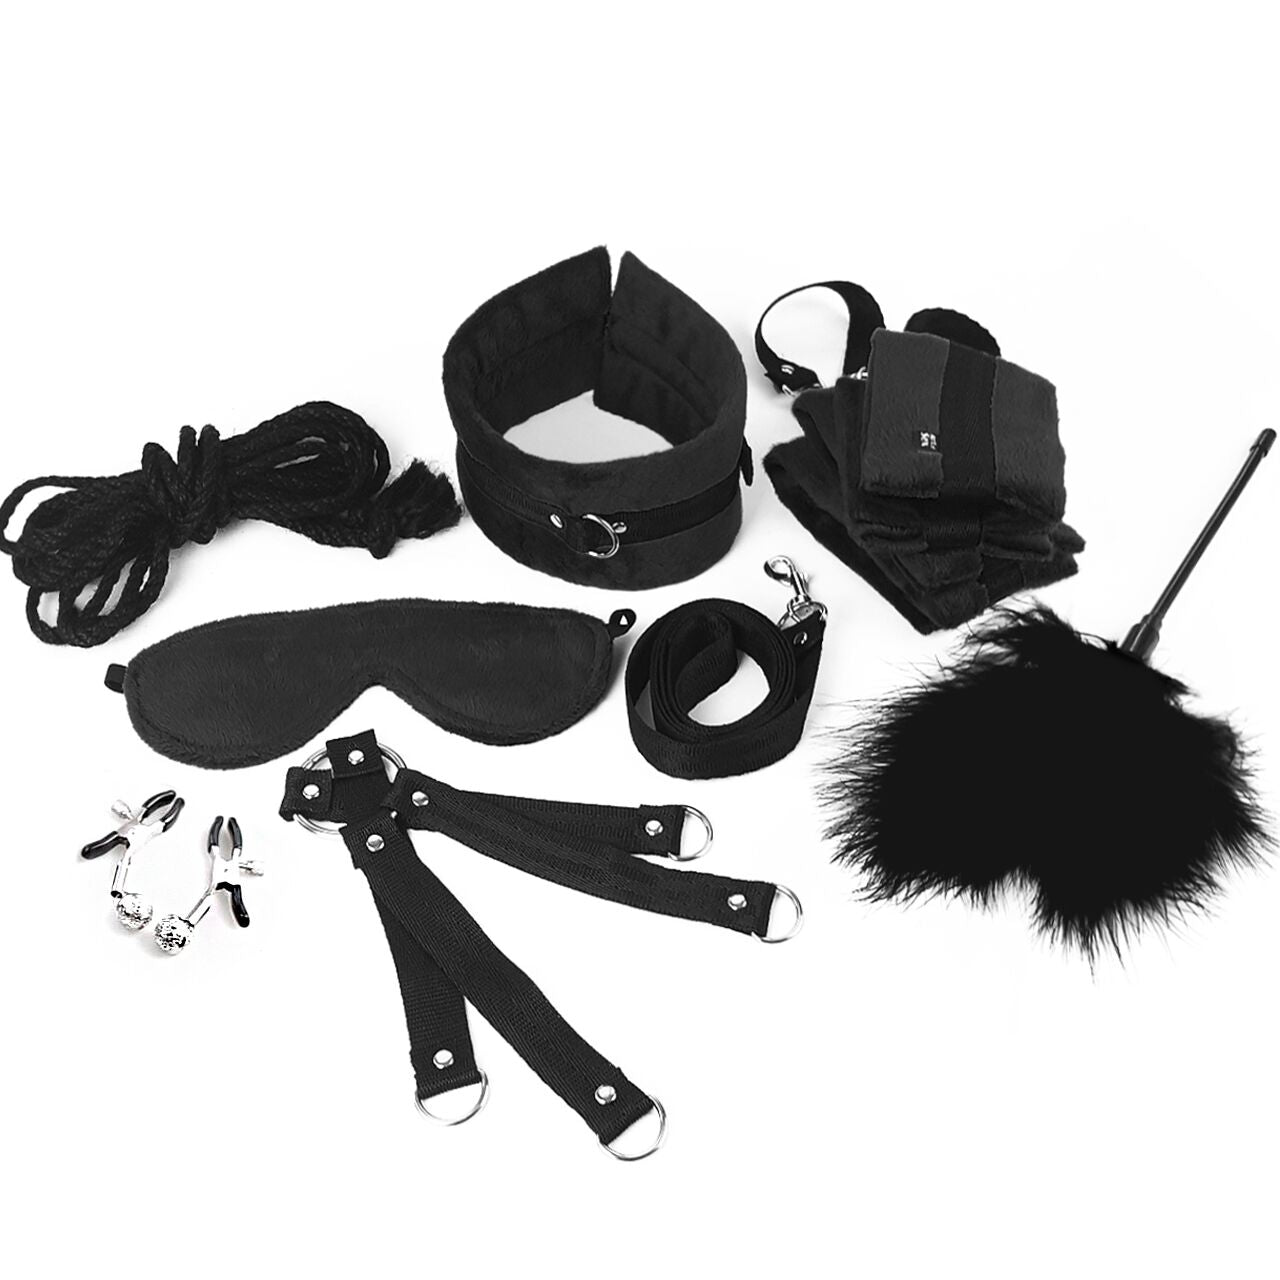 bdsm bondage gear kit set